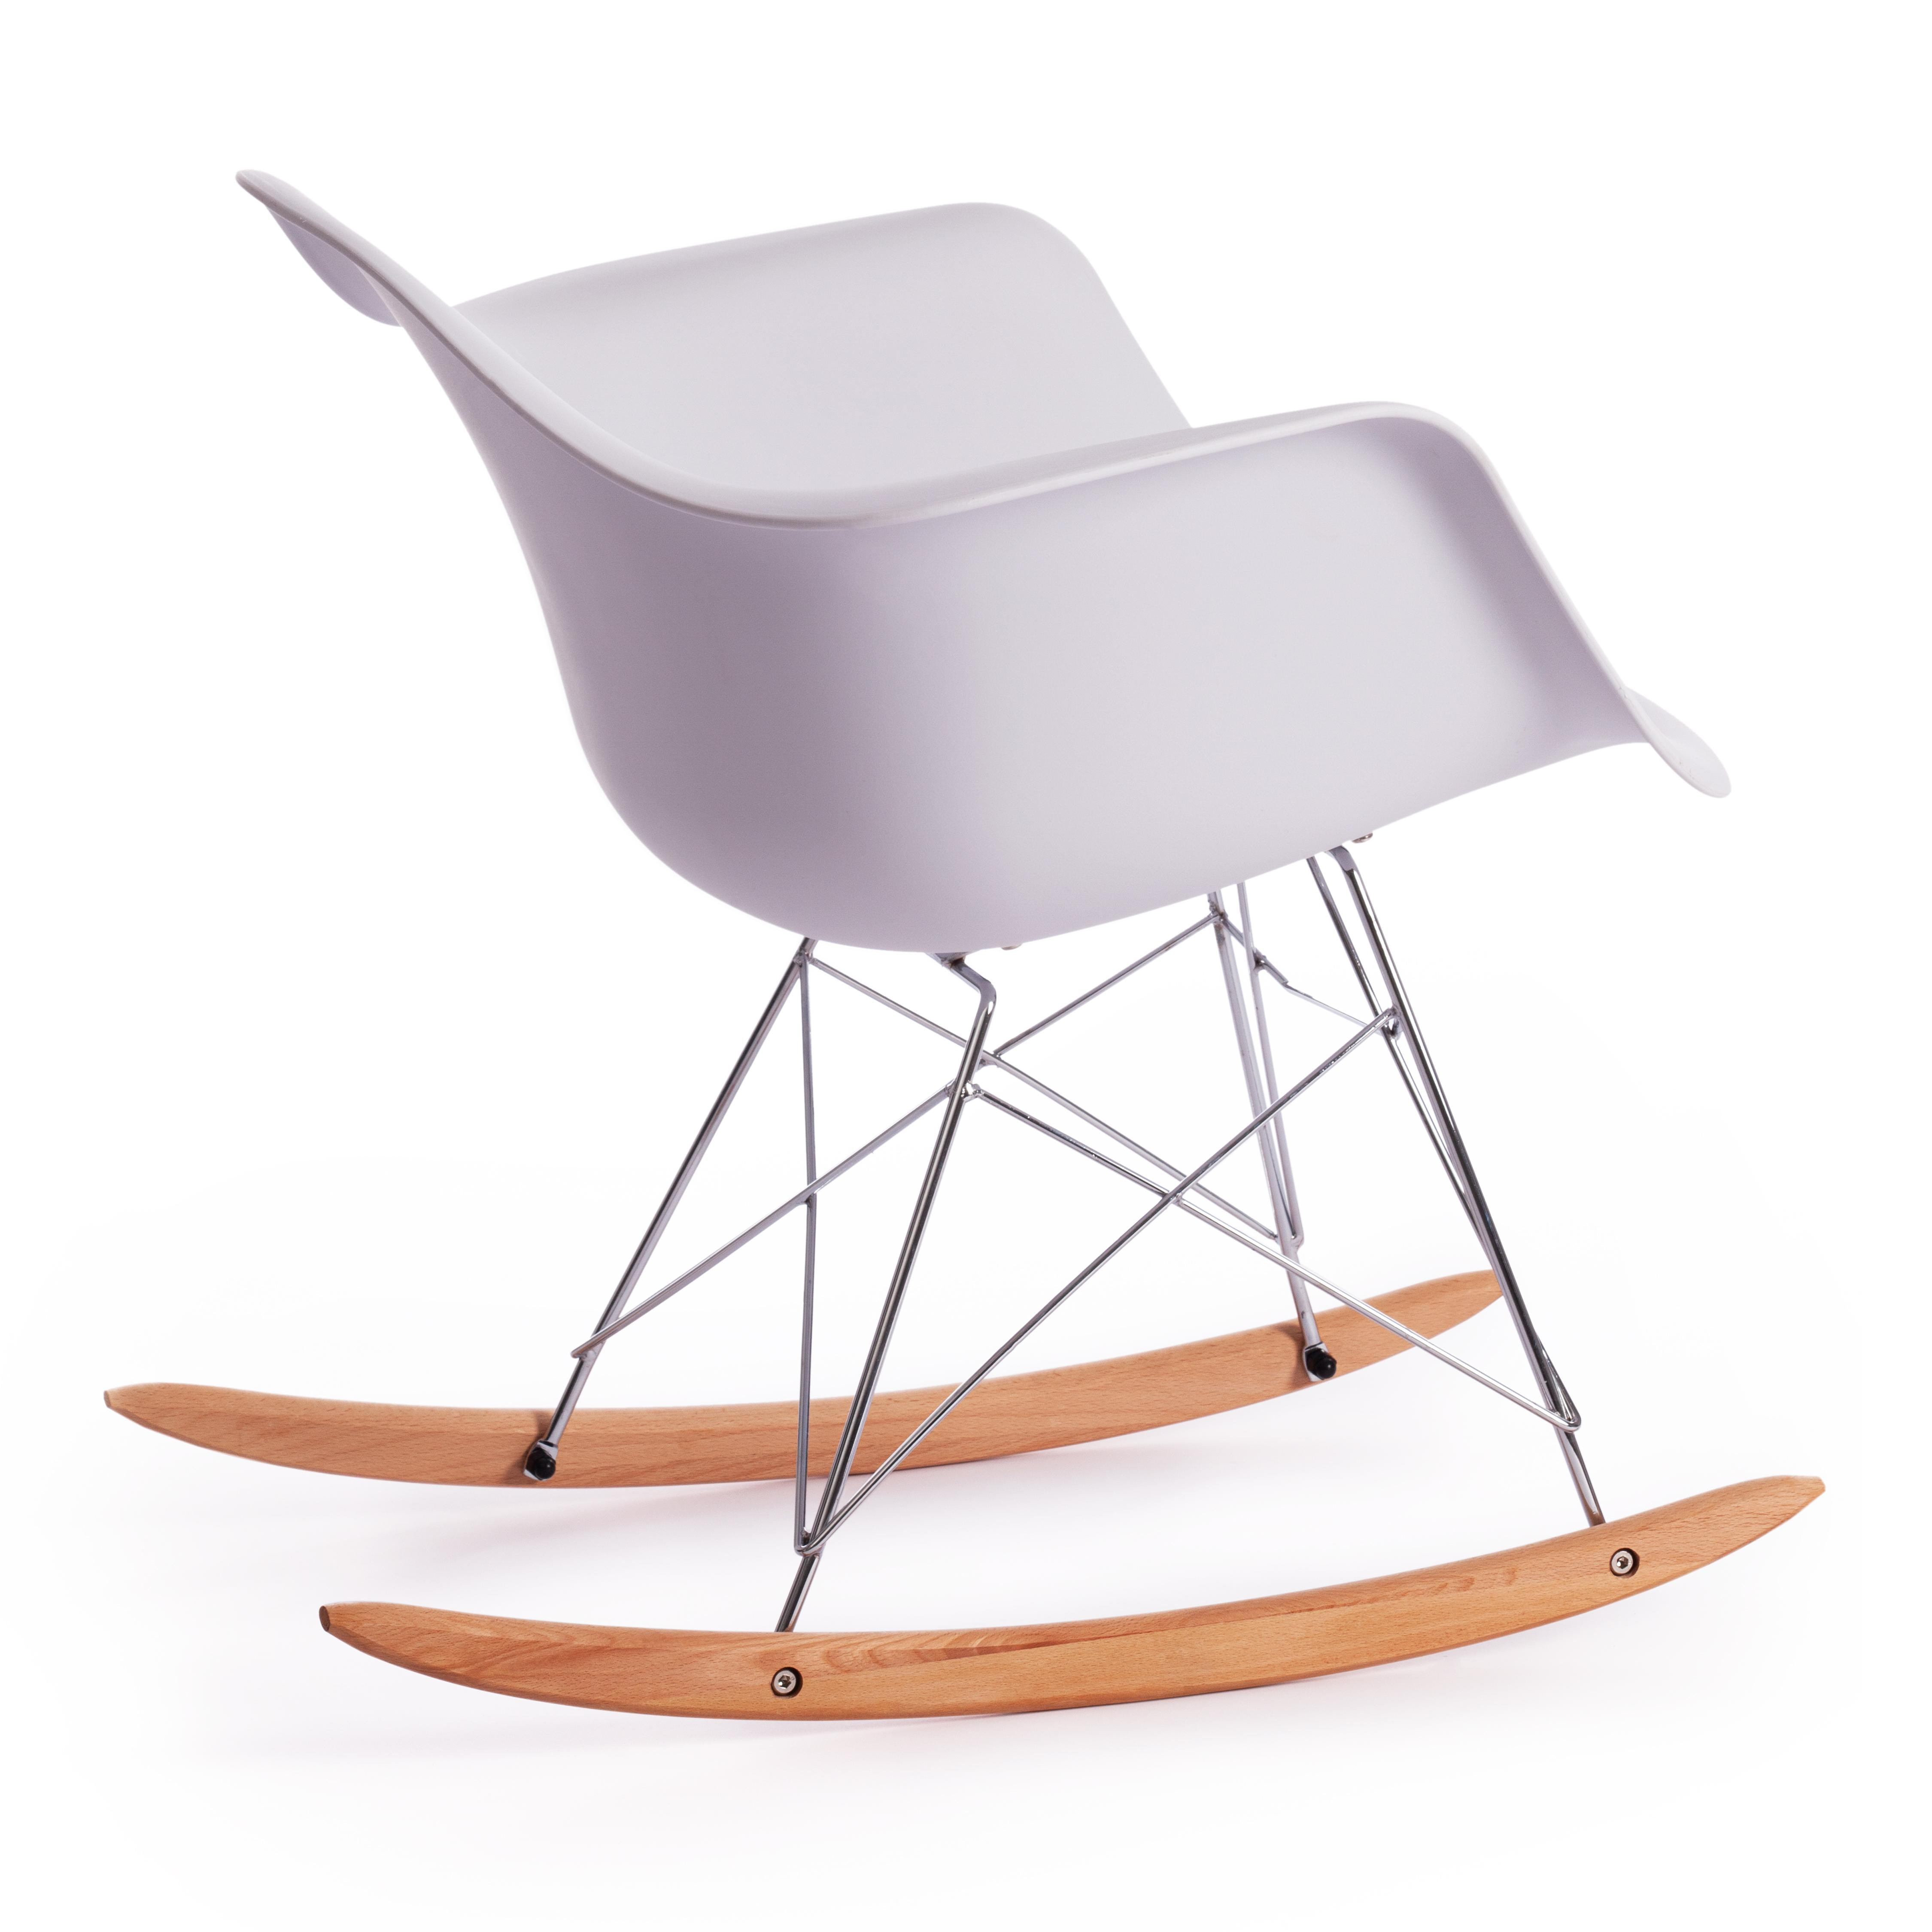 Кресло-качалка CINDY (mod. C1025A) / 1 шт. в упаковке пластик/металл/дерево, 65 х 61 х 74 см, белый 018 /натуральный